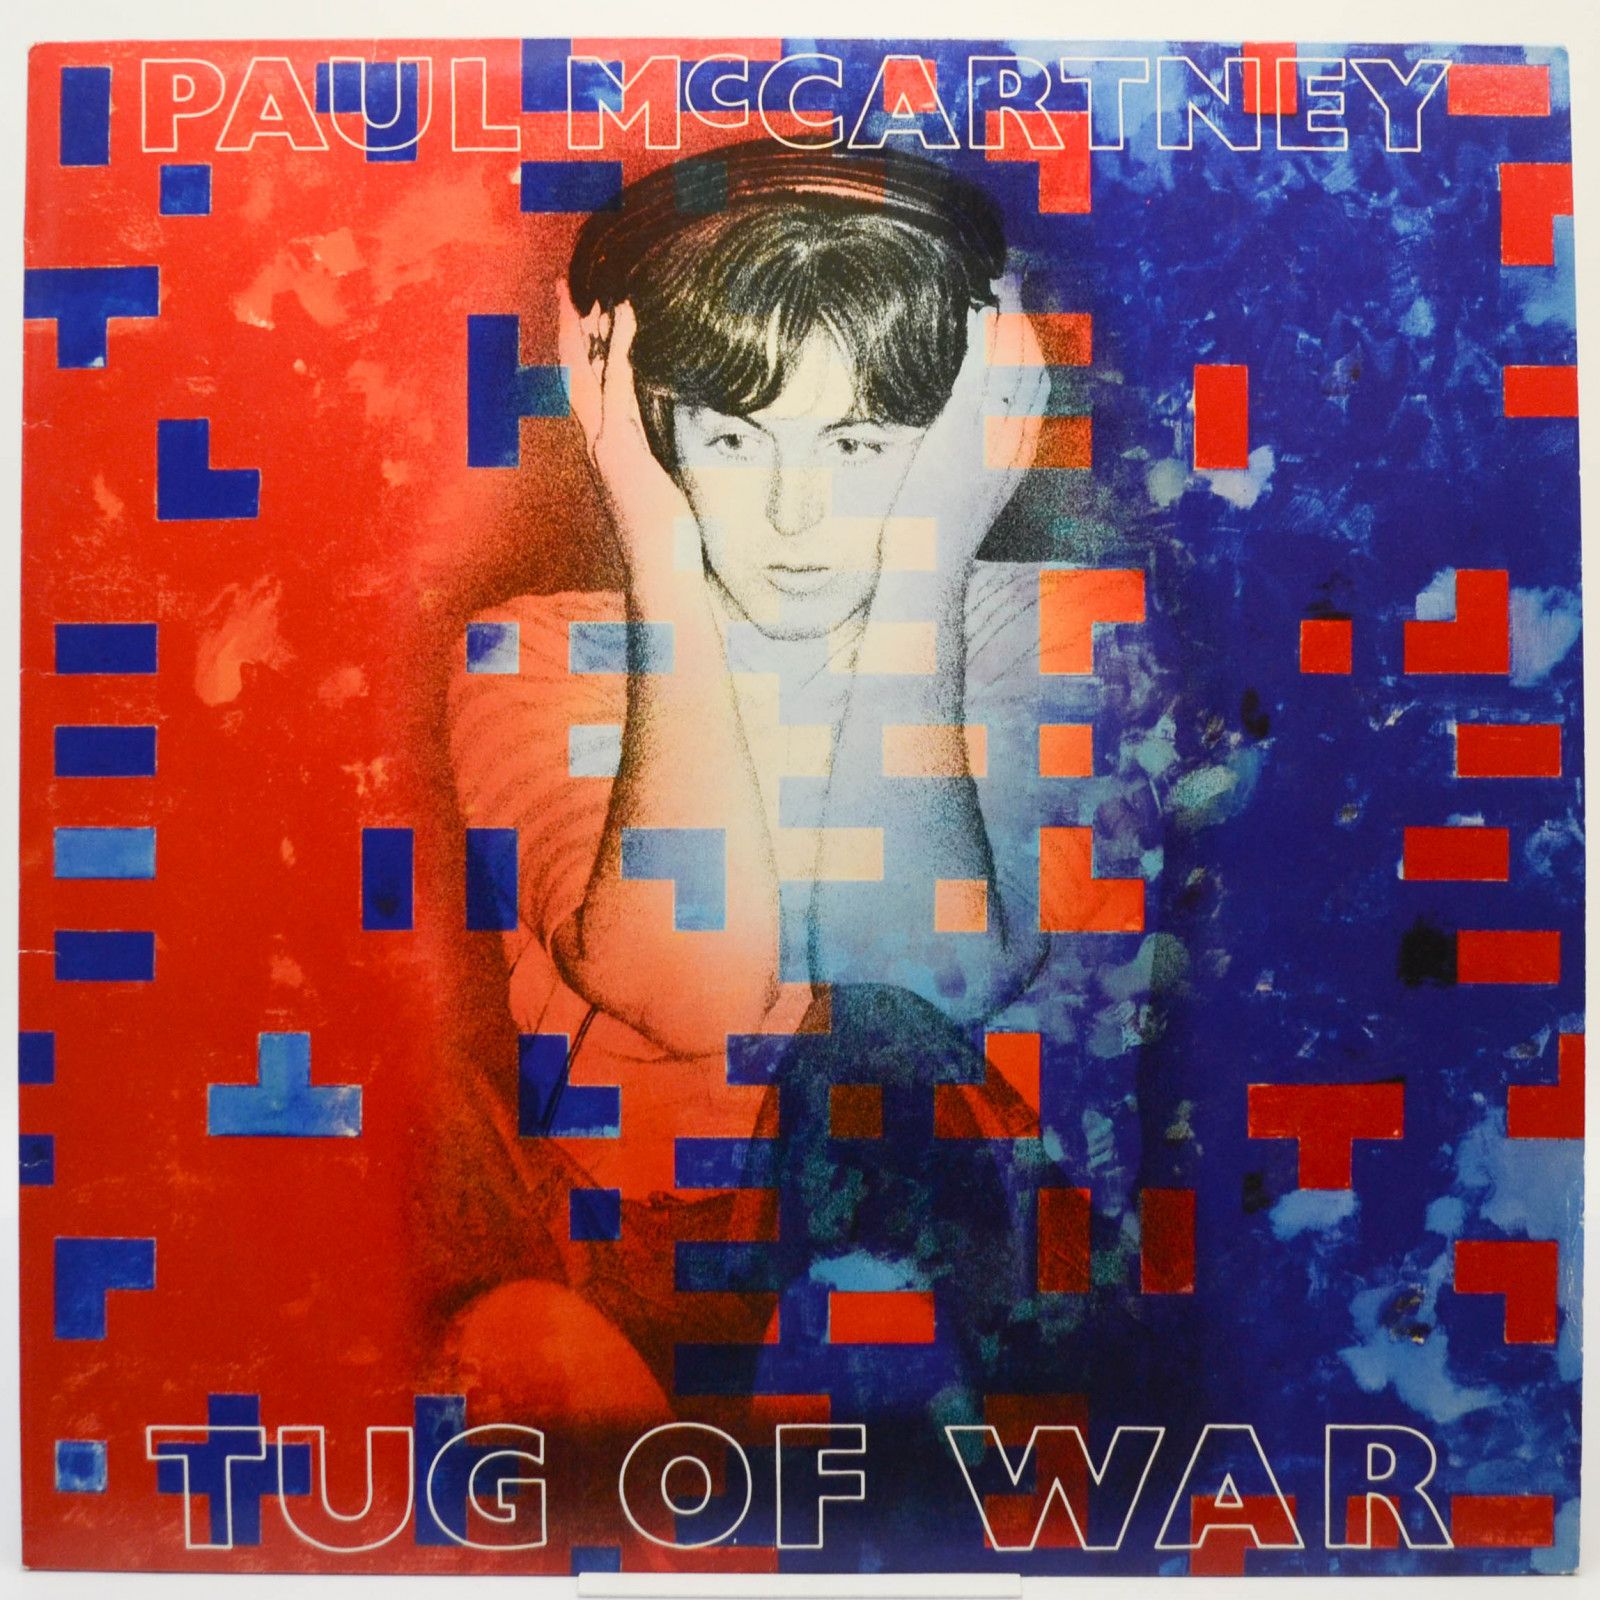 Paul McCartney — Tug Of War, 1982